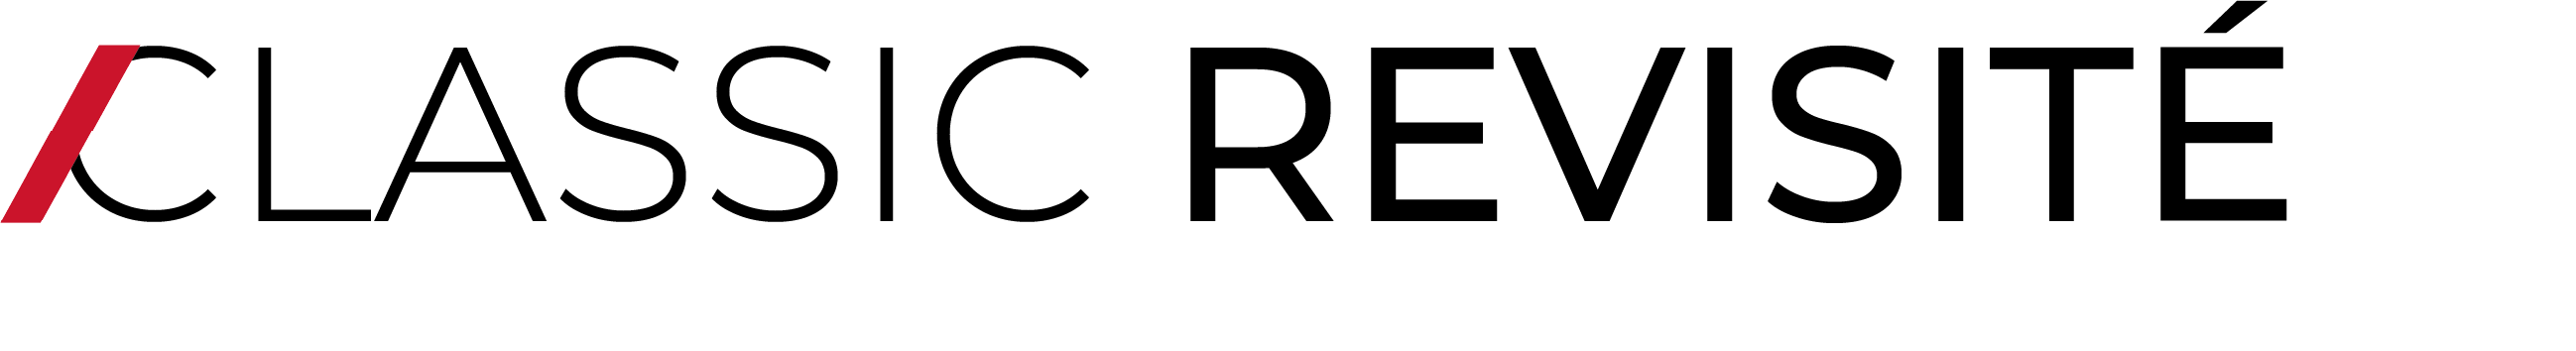 Logo de la tendance Classic revisité